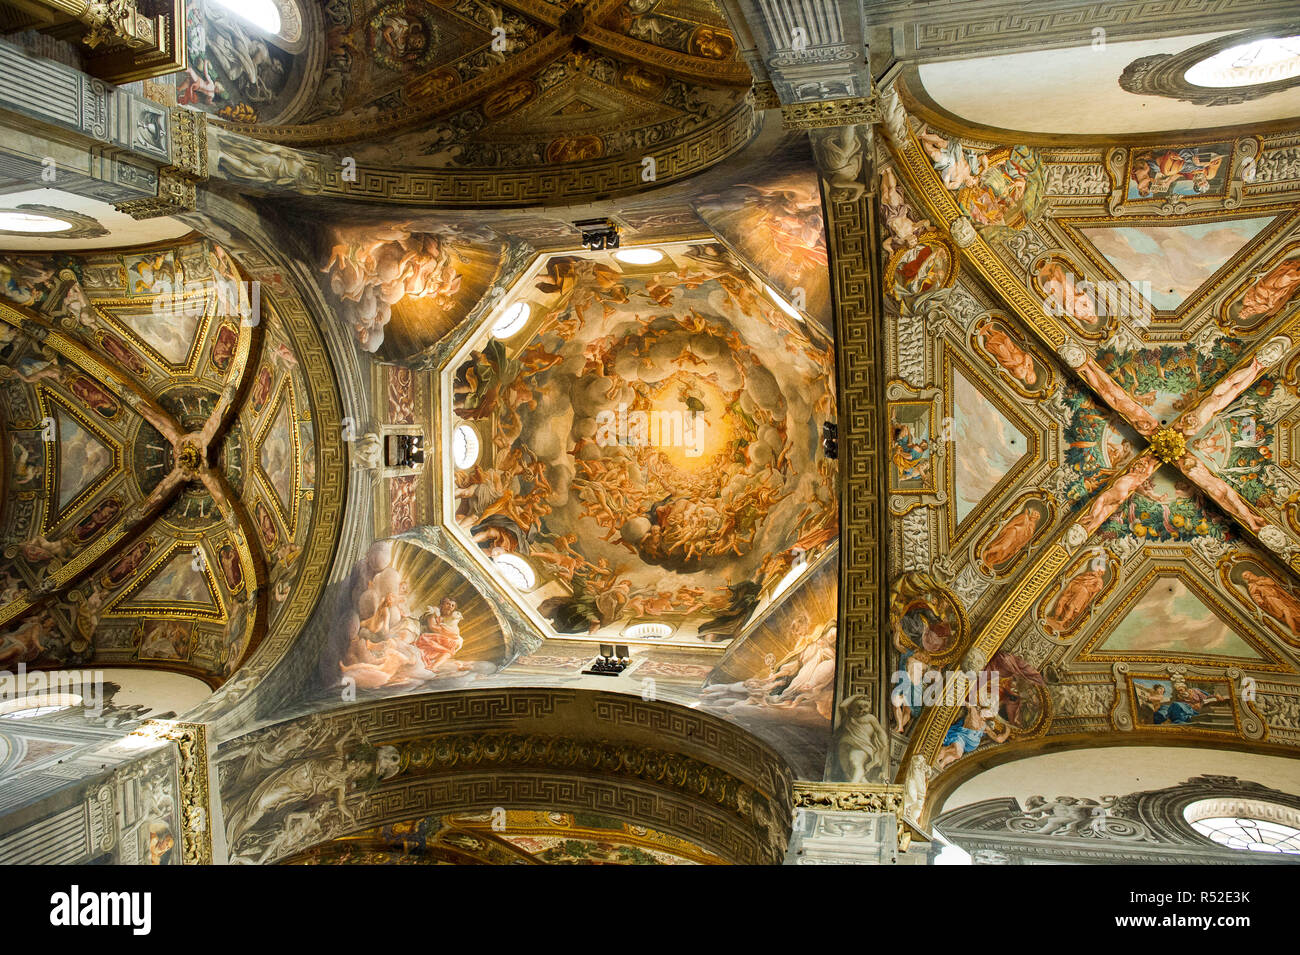 L'Italia, Emilia Romagna, Parma, Cattedrale di Santa Maria Assunta, appreso della cupola dell'Assunzione della Vergine dipinta da Correggio Foto Stock